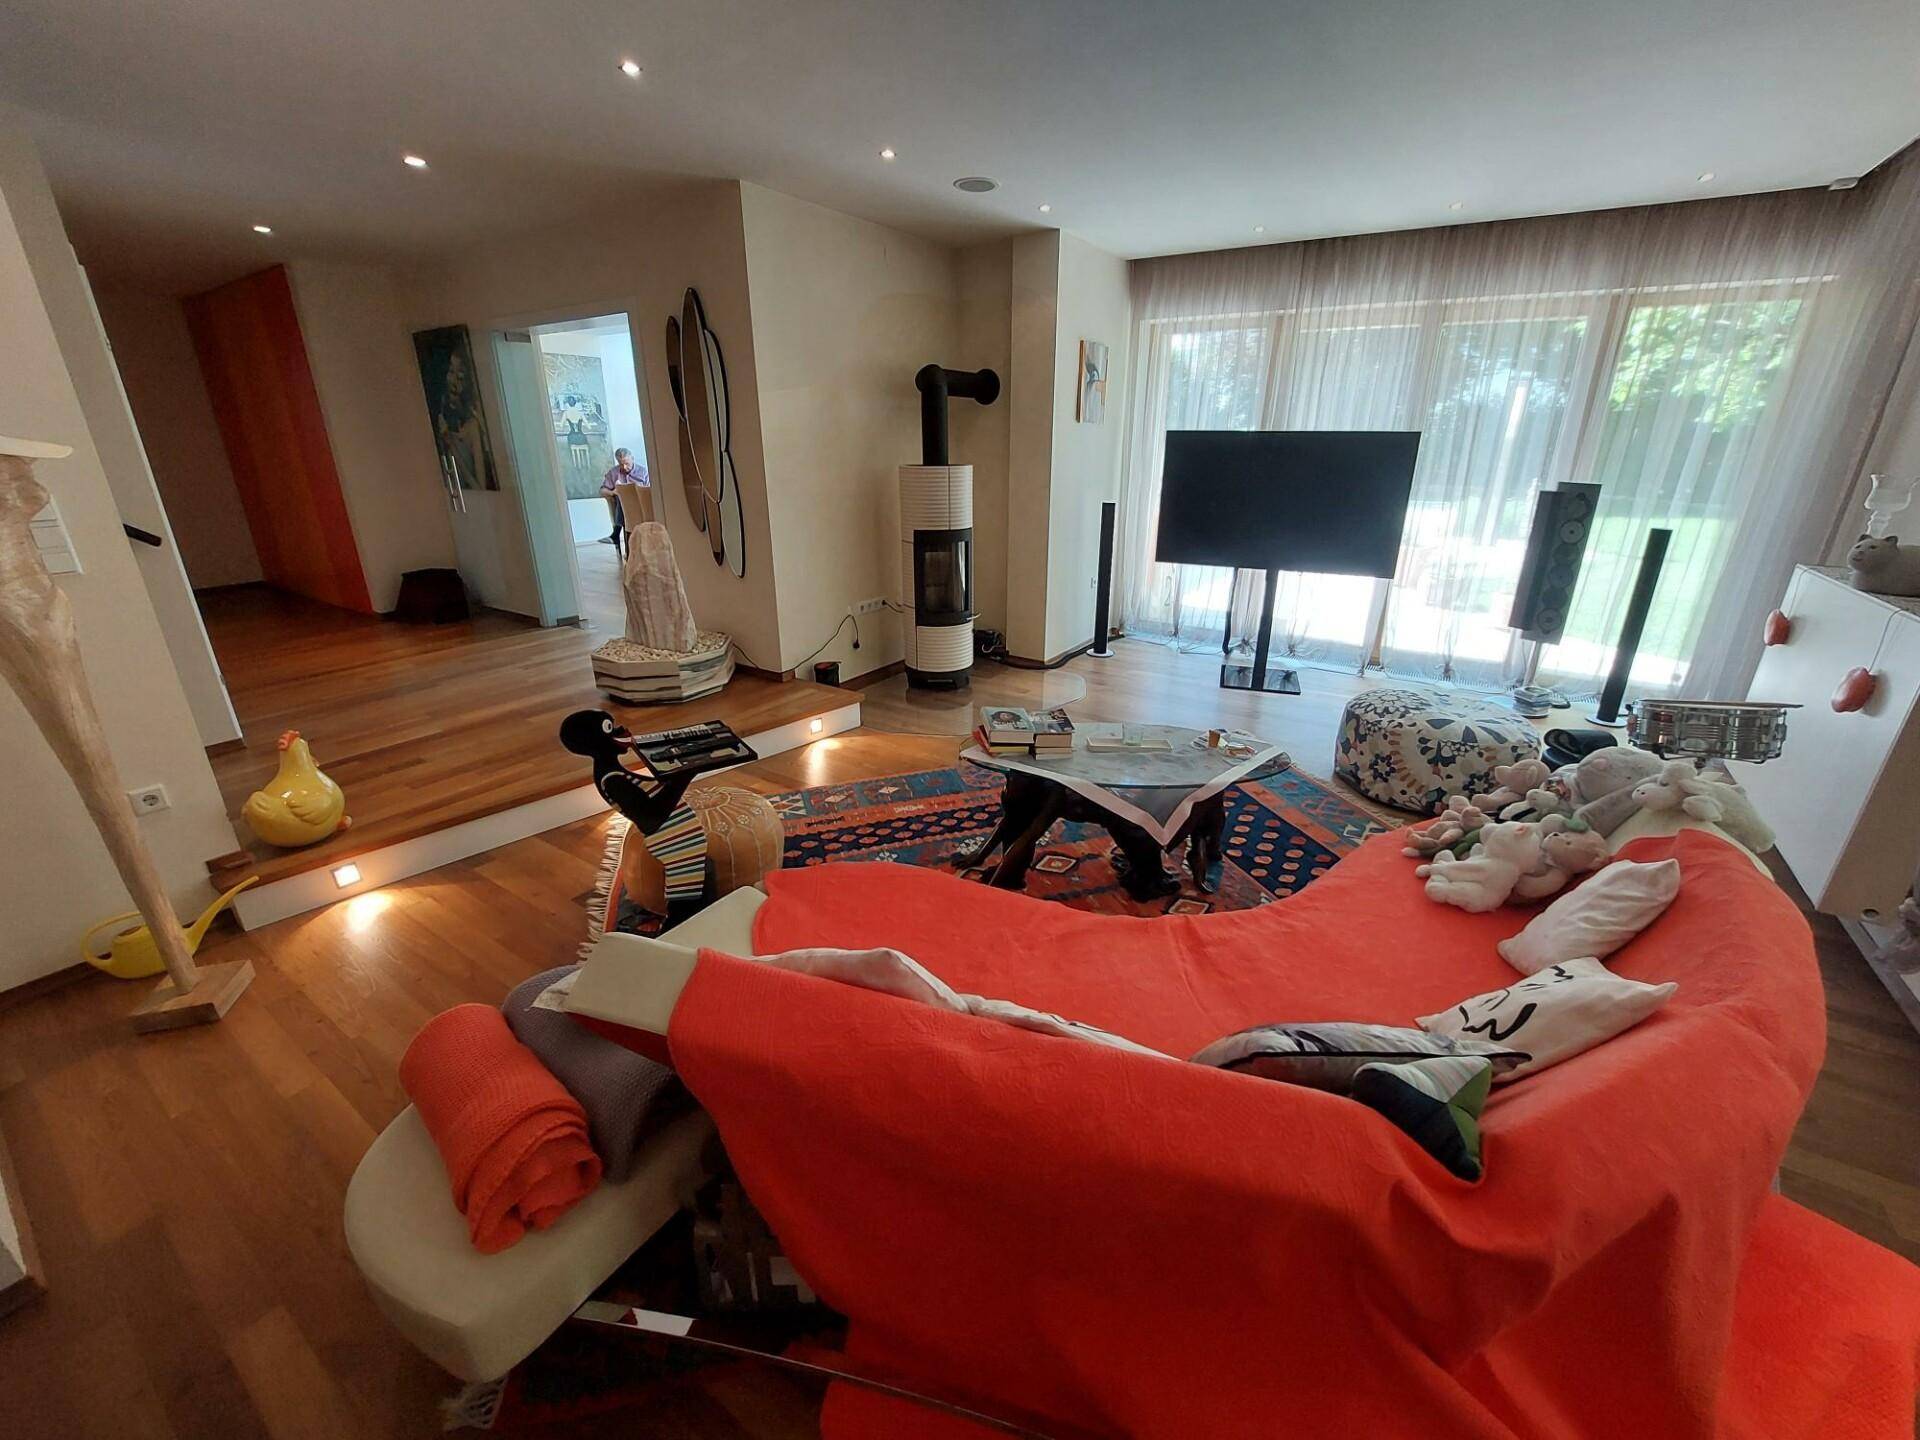 Wohnzimmer mit Schwedenofen